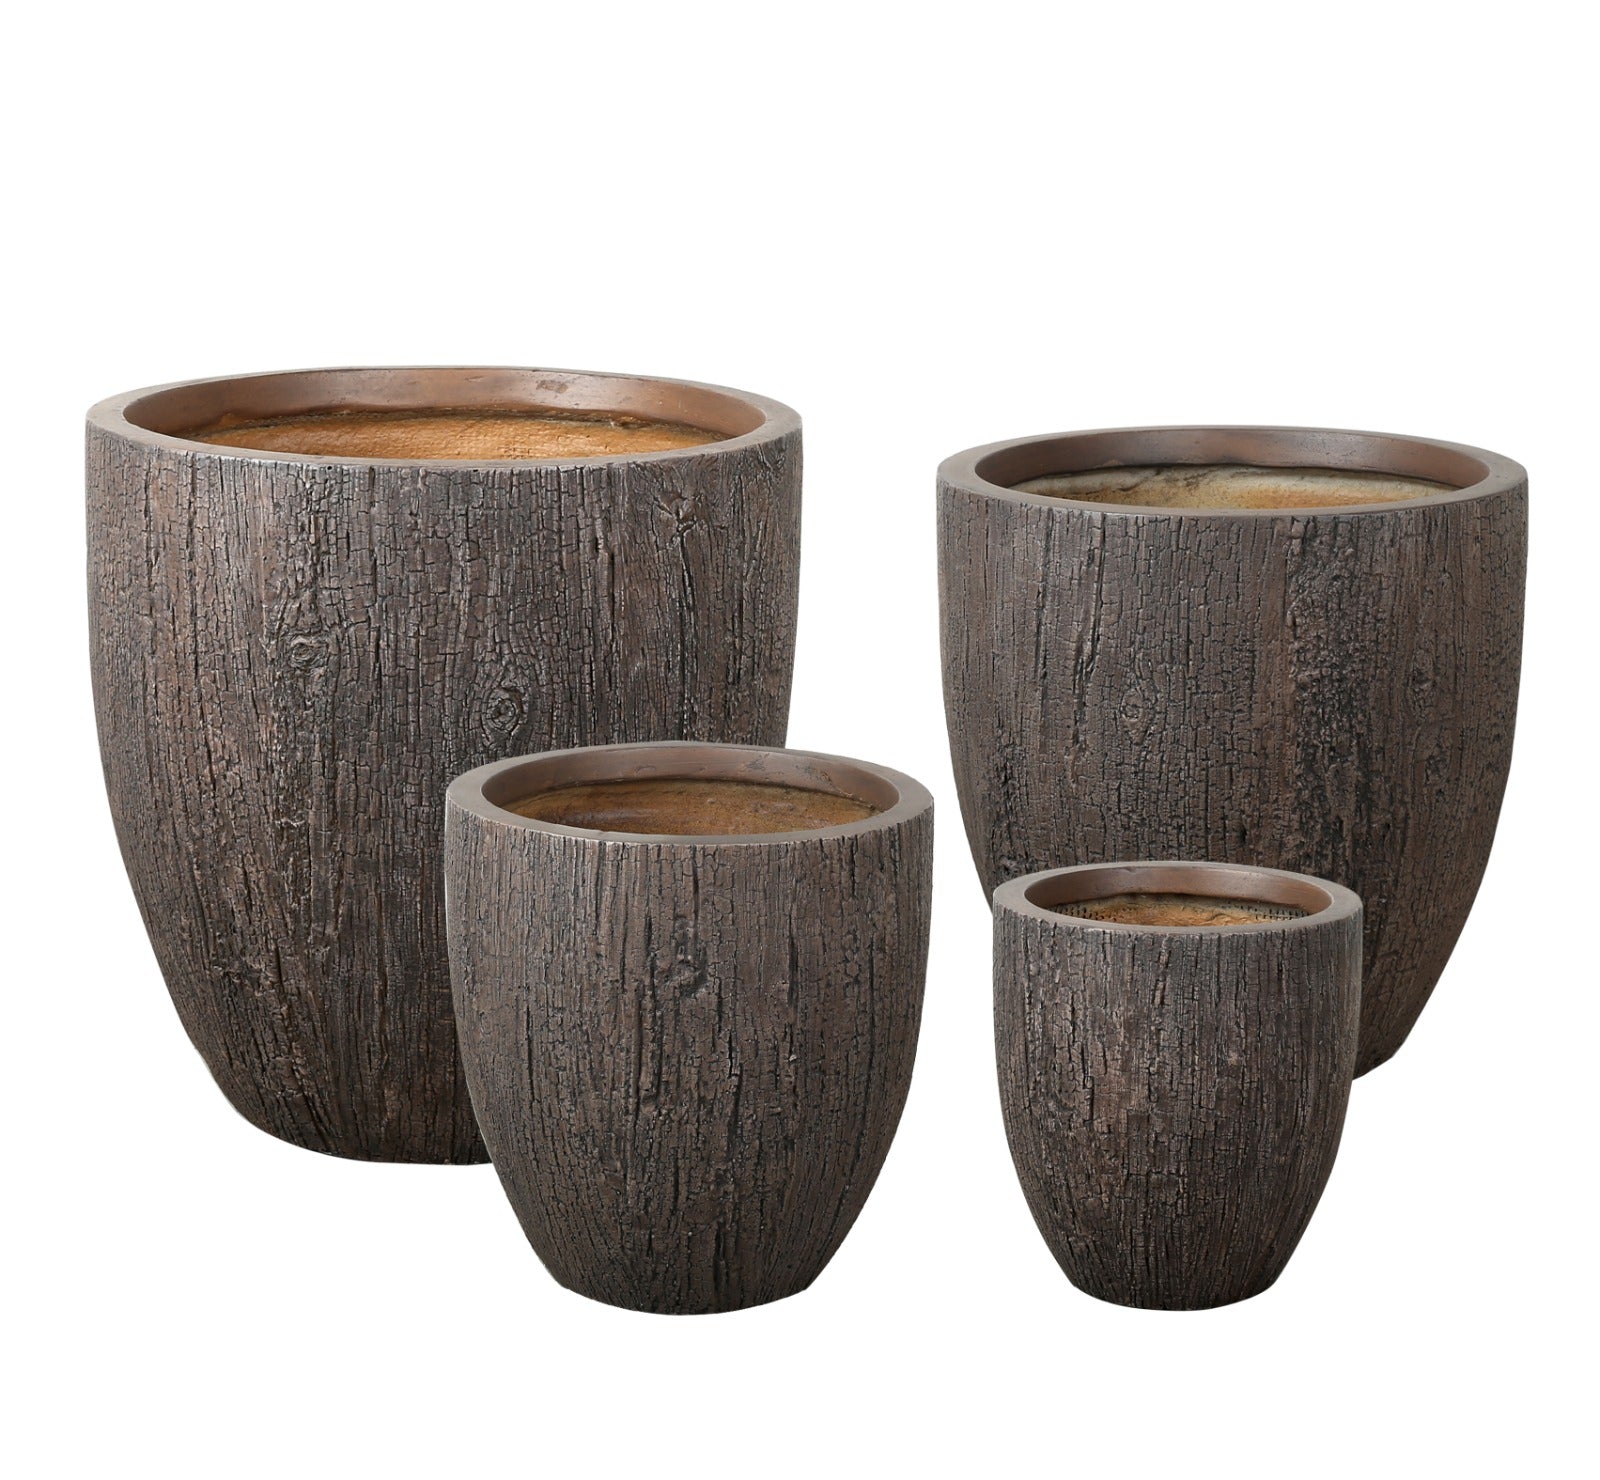 Rustic Fiber Clay Pot - Old Wood - Plant Studio LLC